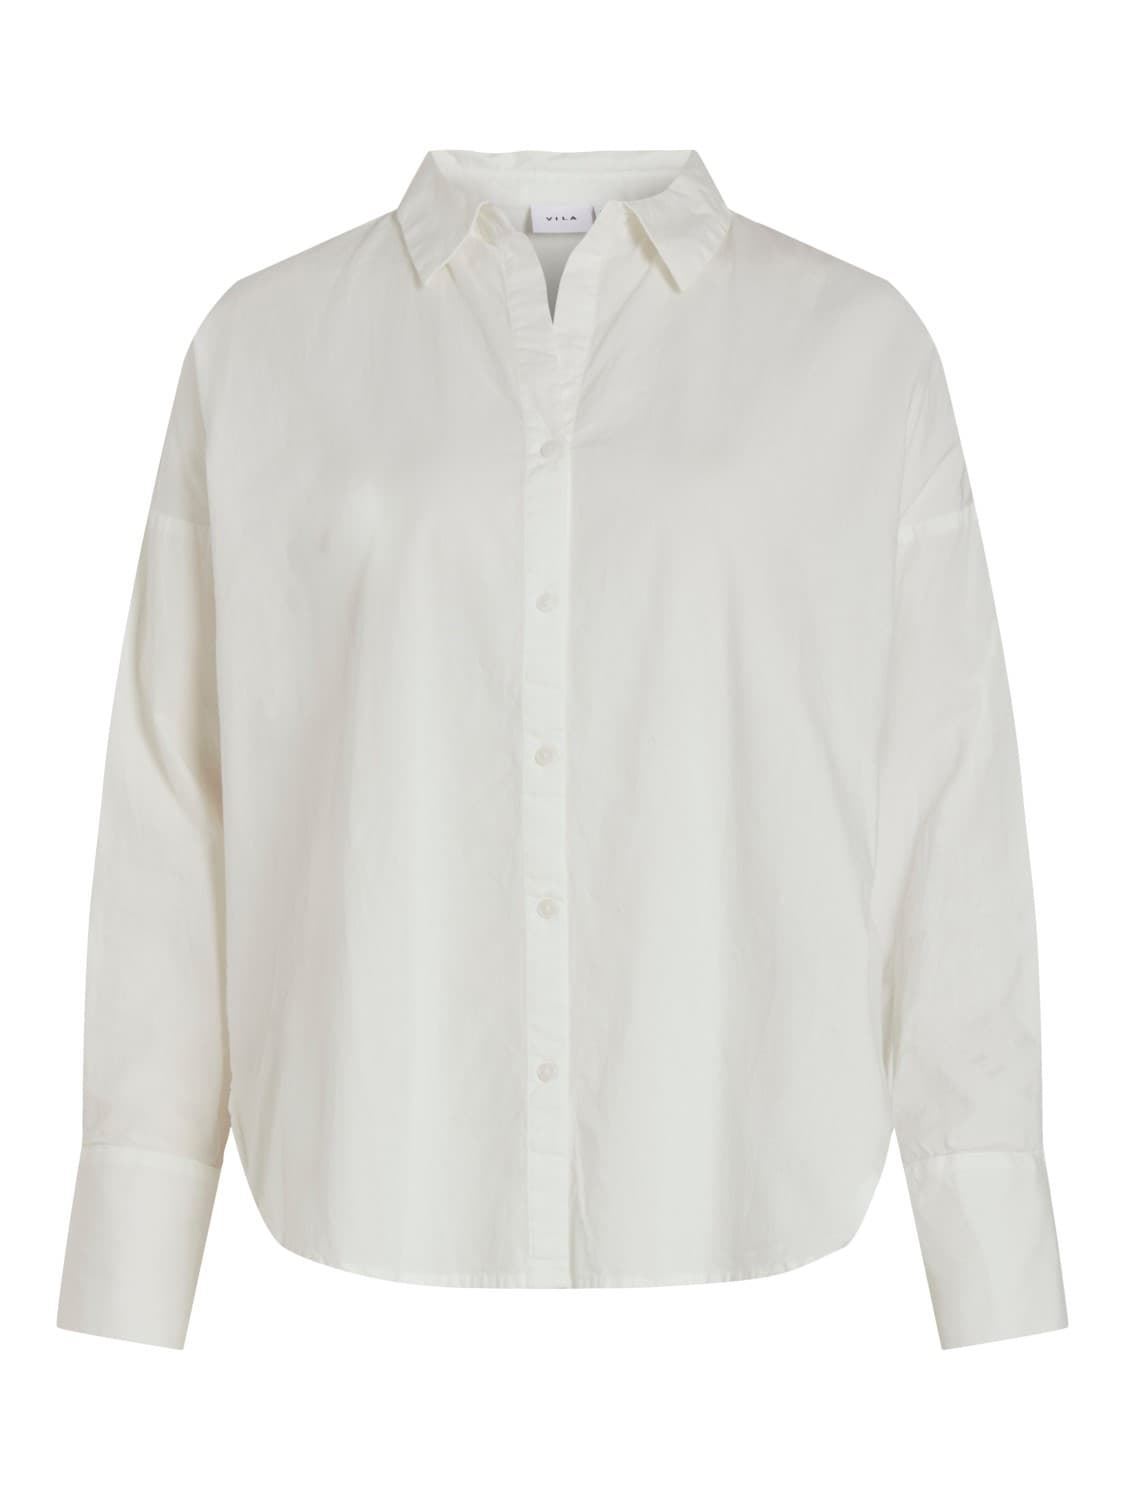 Camisa manga larga Vigamis blanca - Imagen 3